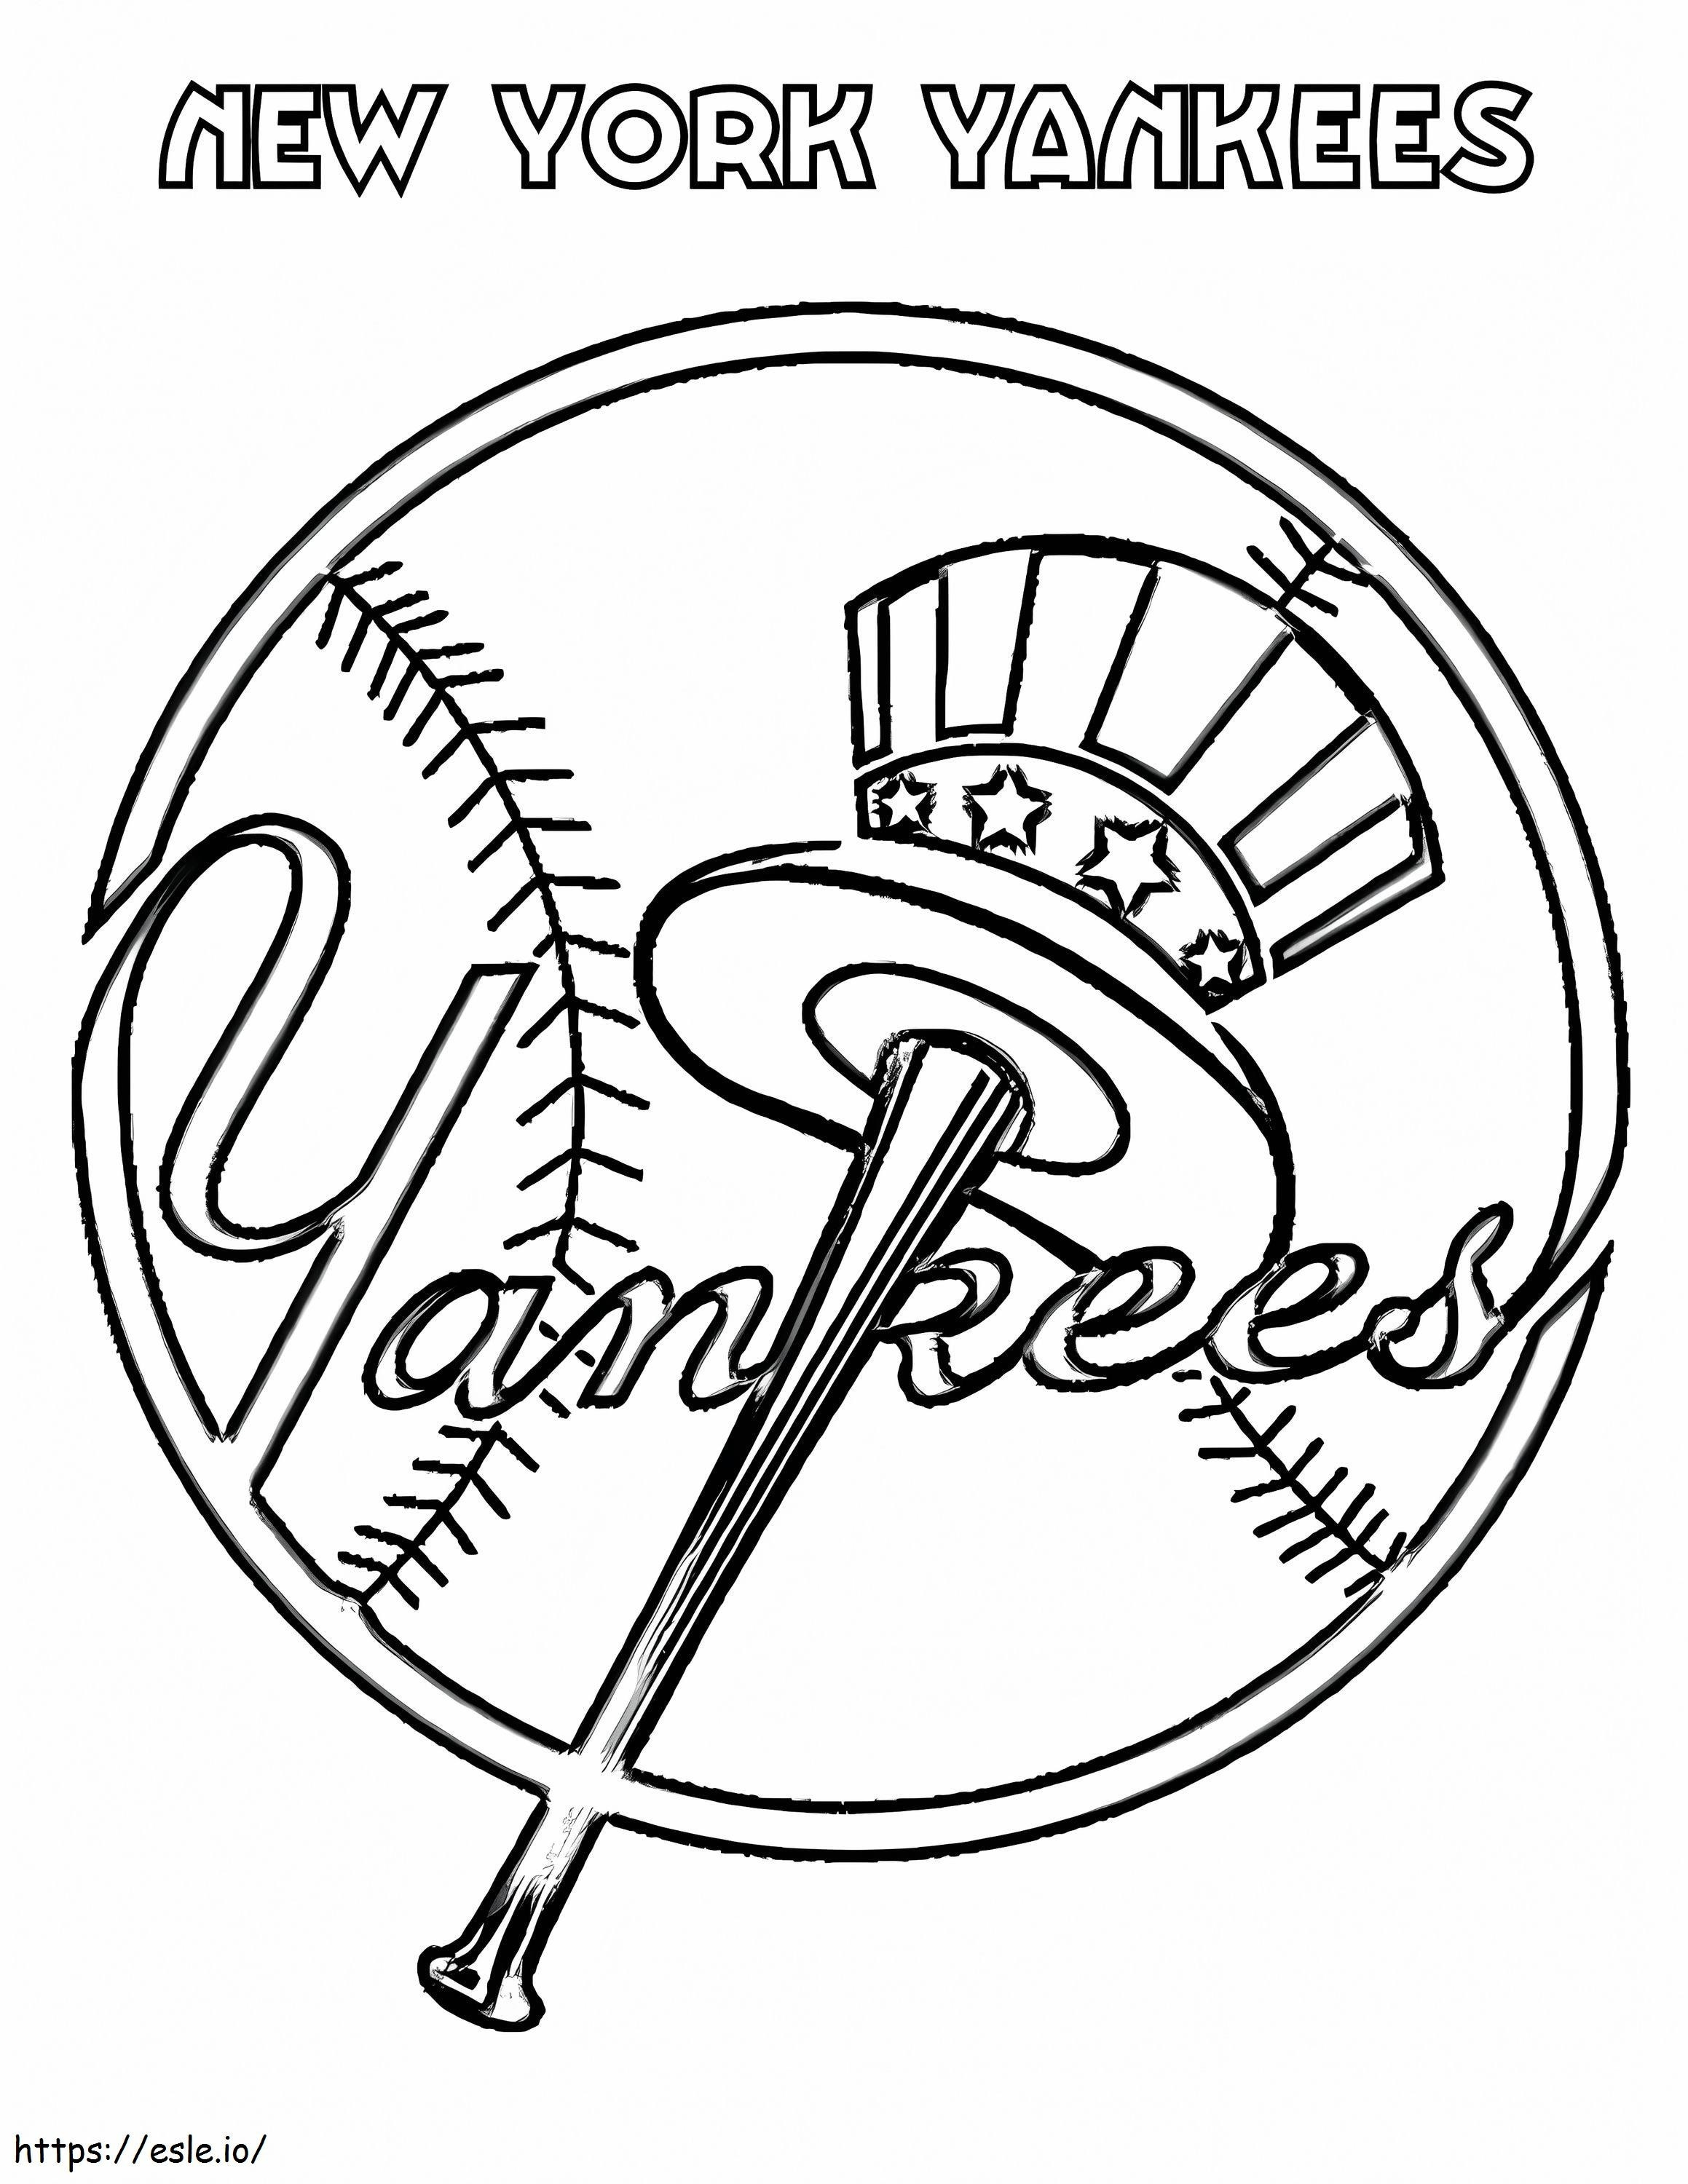 Yankees de Nueva York para colorear